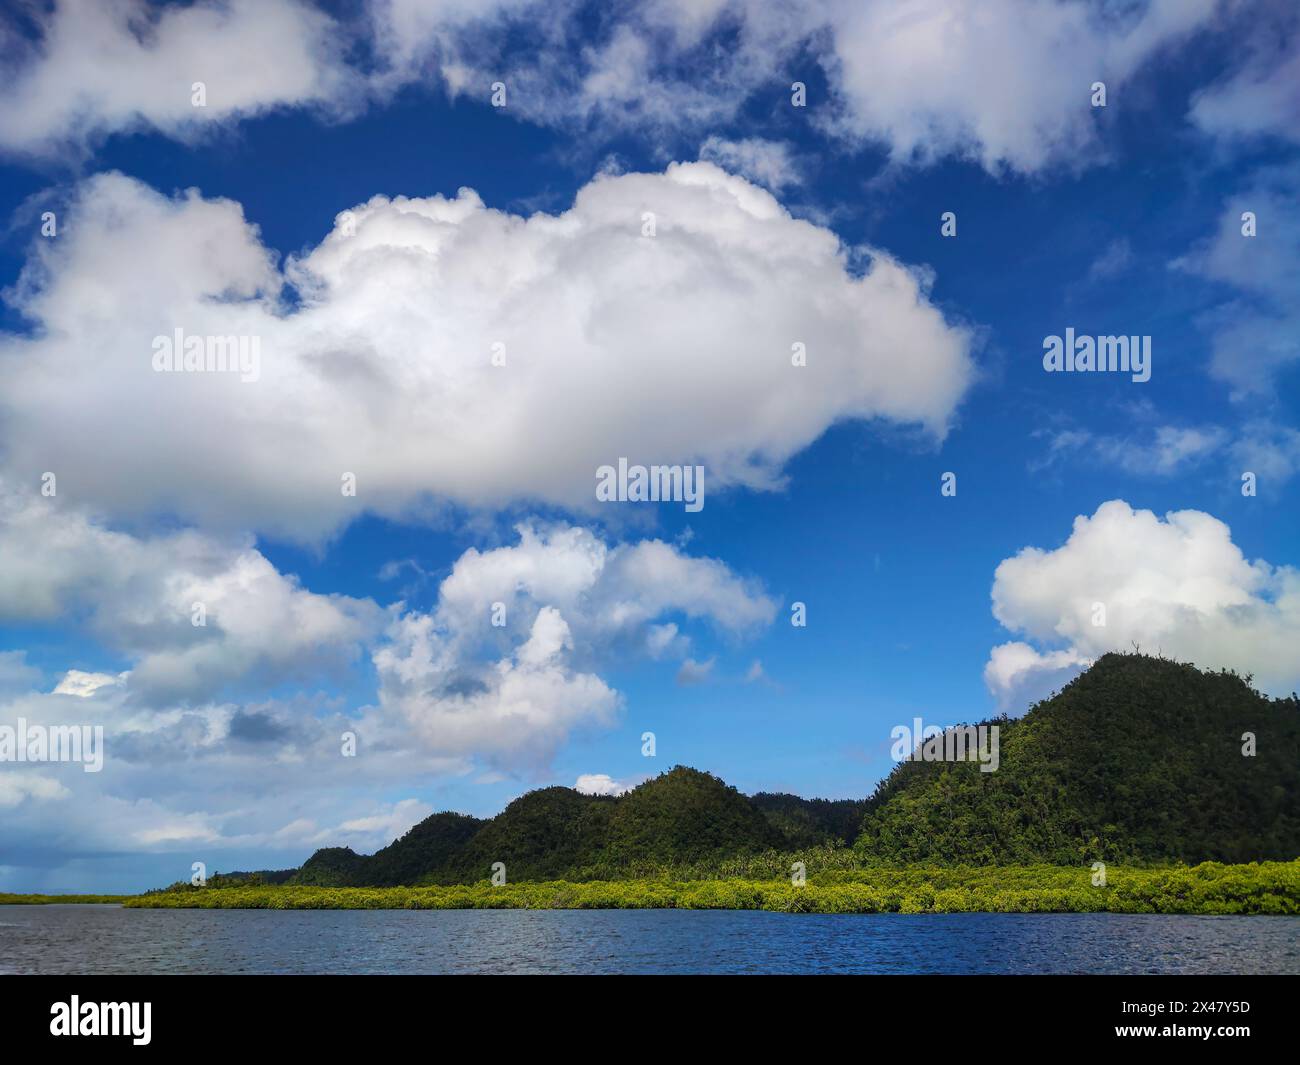 Eine ruhige, malerische Szene der natürlichen Elemente - Land, Himmel und Wasser - treffen sich in einer friedlichen, malerischen aussicht. Stockfoto